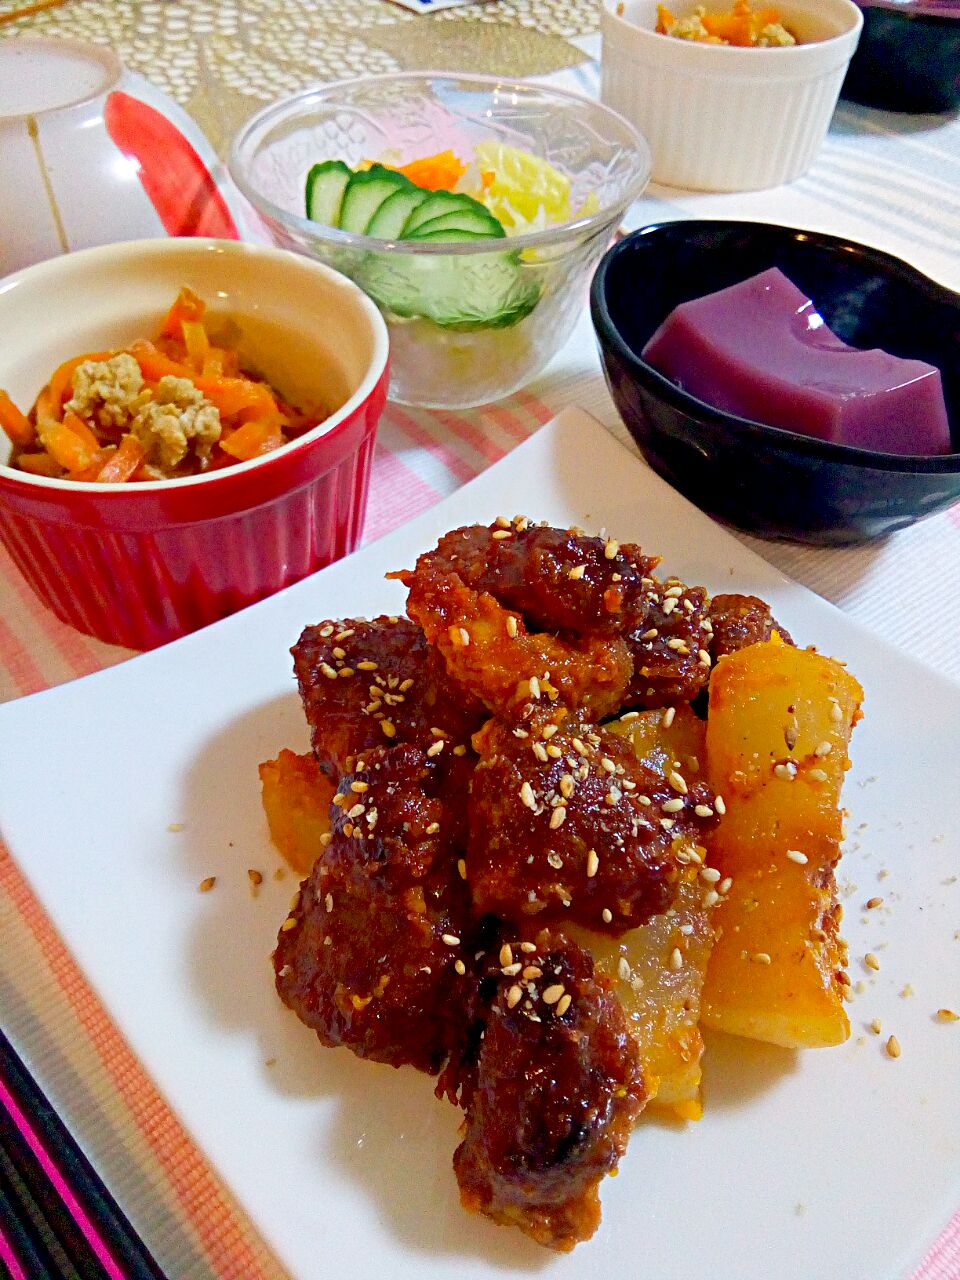 dinner🍴
豚と大根のトシーノ♡
にんじんしりしり♡
紅芋ごま豆腐♡
サラダ♡お味噌汁♡

 #おうちごはん #Dinner #フィリピン料理